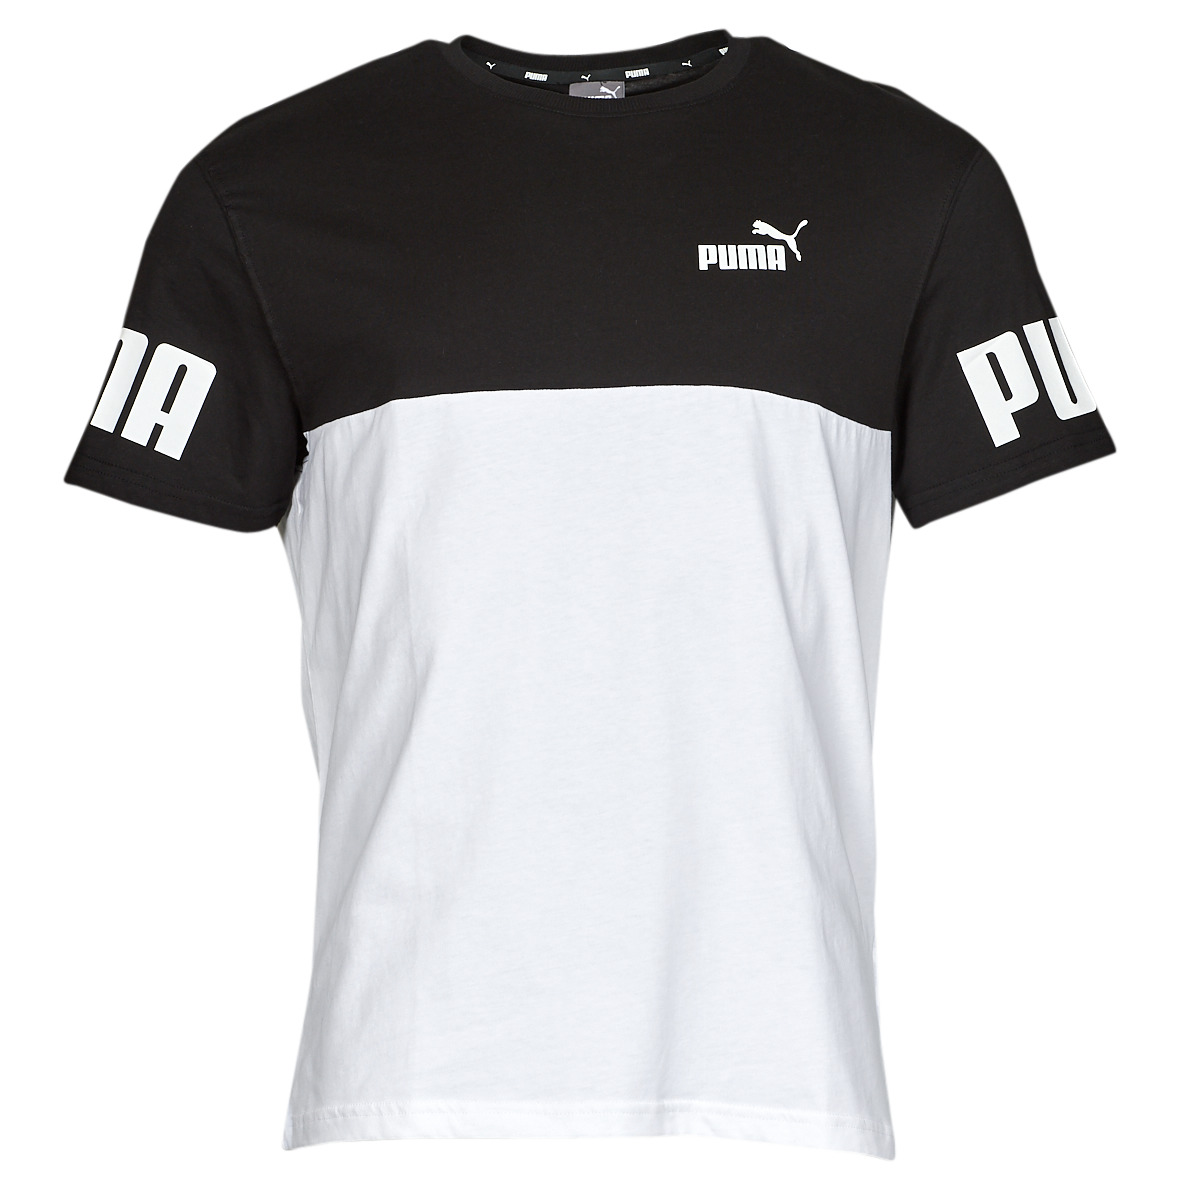 Puma PUMA POWER Gratuite Homme Noir COLORBLOCK - Spartoo courtes T-shirts ! € | - Vêtements TEE manches 30,99 / Blanc Livraison